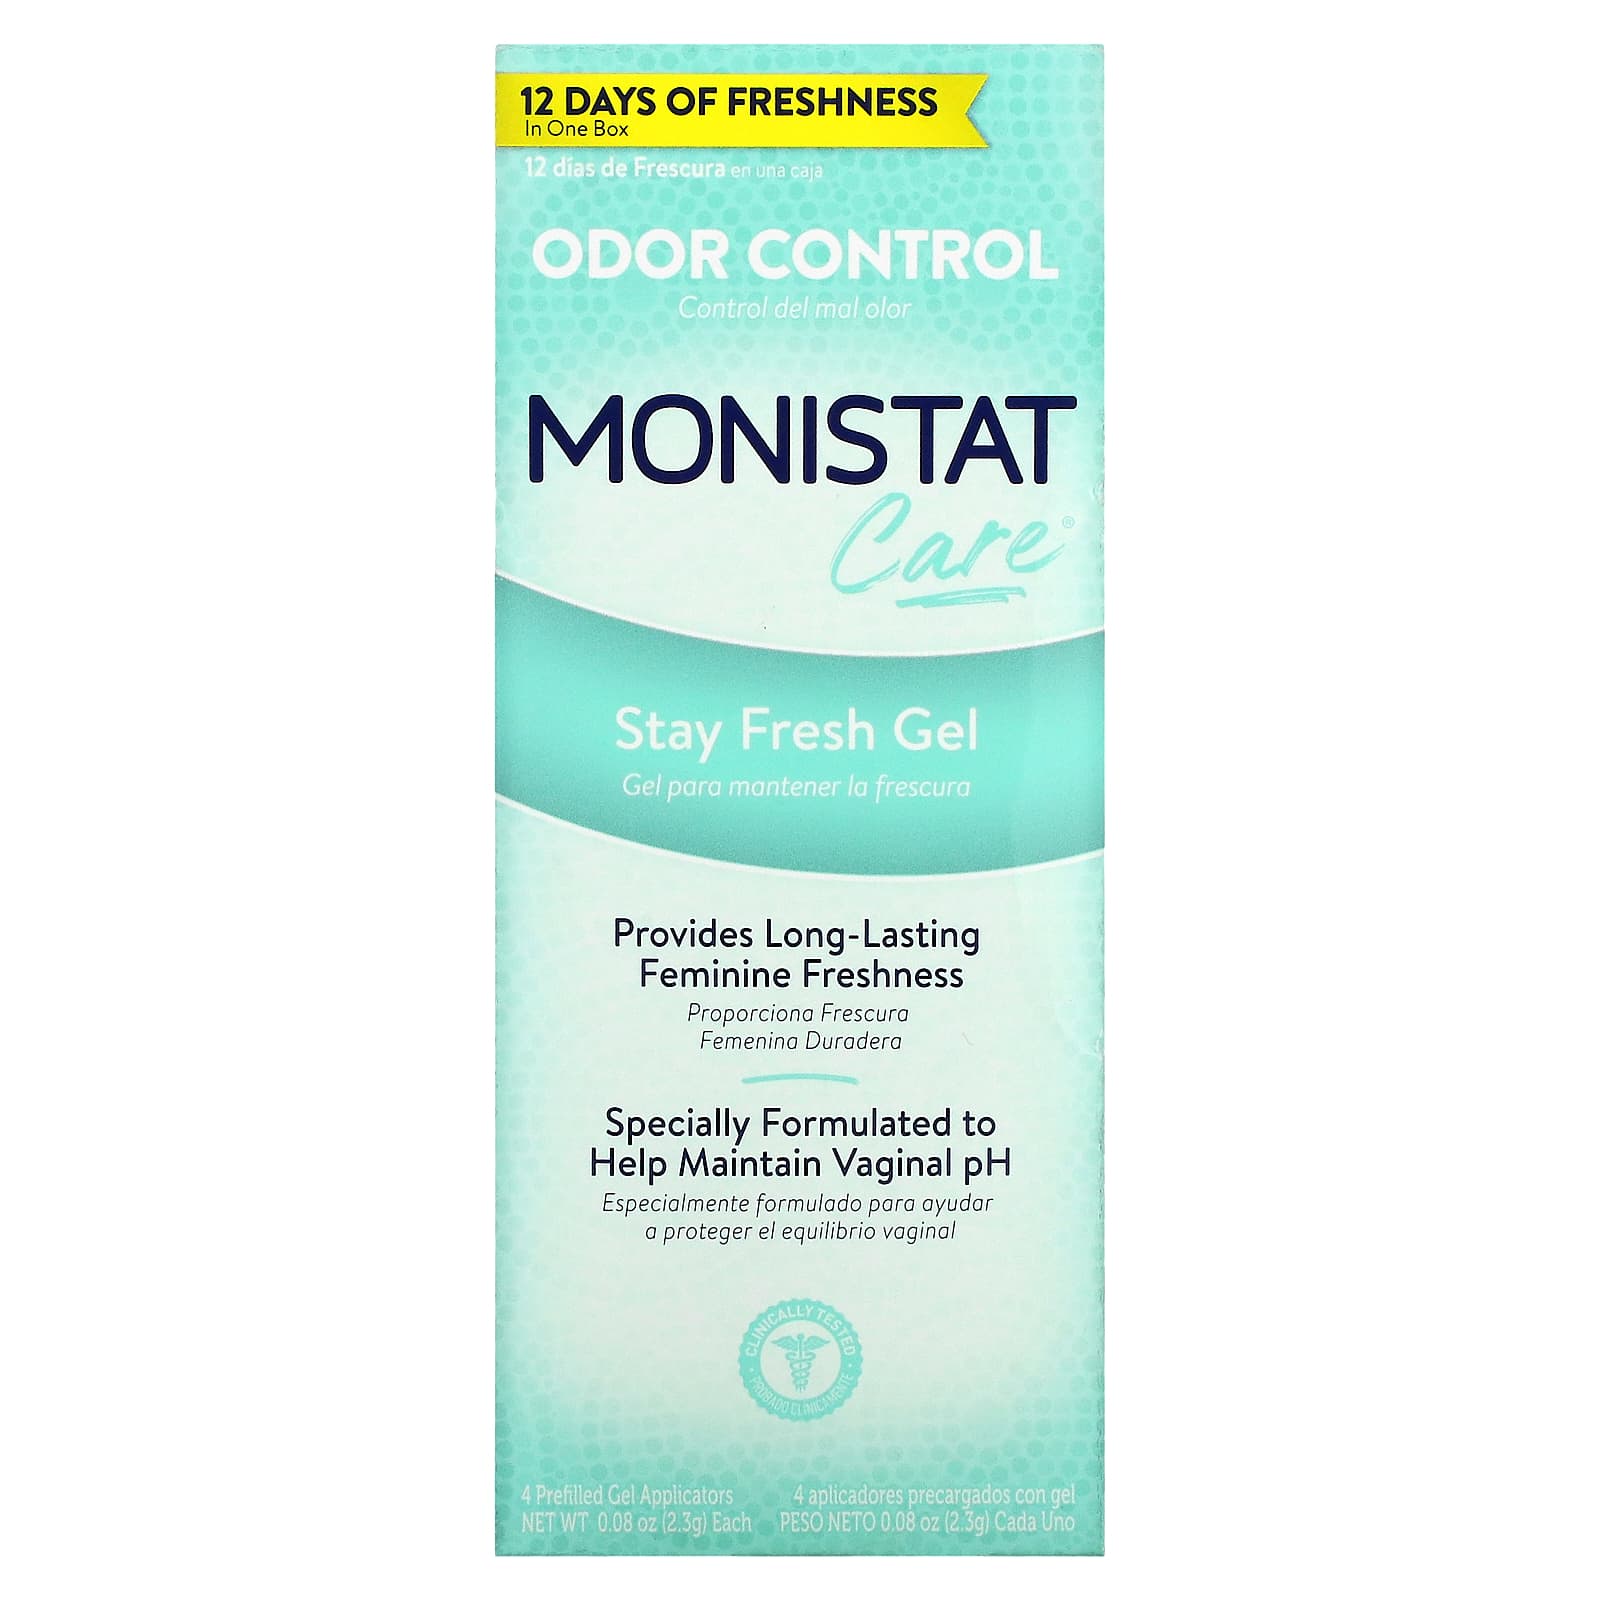 Гель Monistat Stay Fresh, 4 аппликатора по 2,3 г monistat care контроль запаха гель stay fresh 4 предварительно заполненных геля аппликатора по 2 3 г 0 08 унции